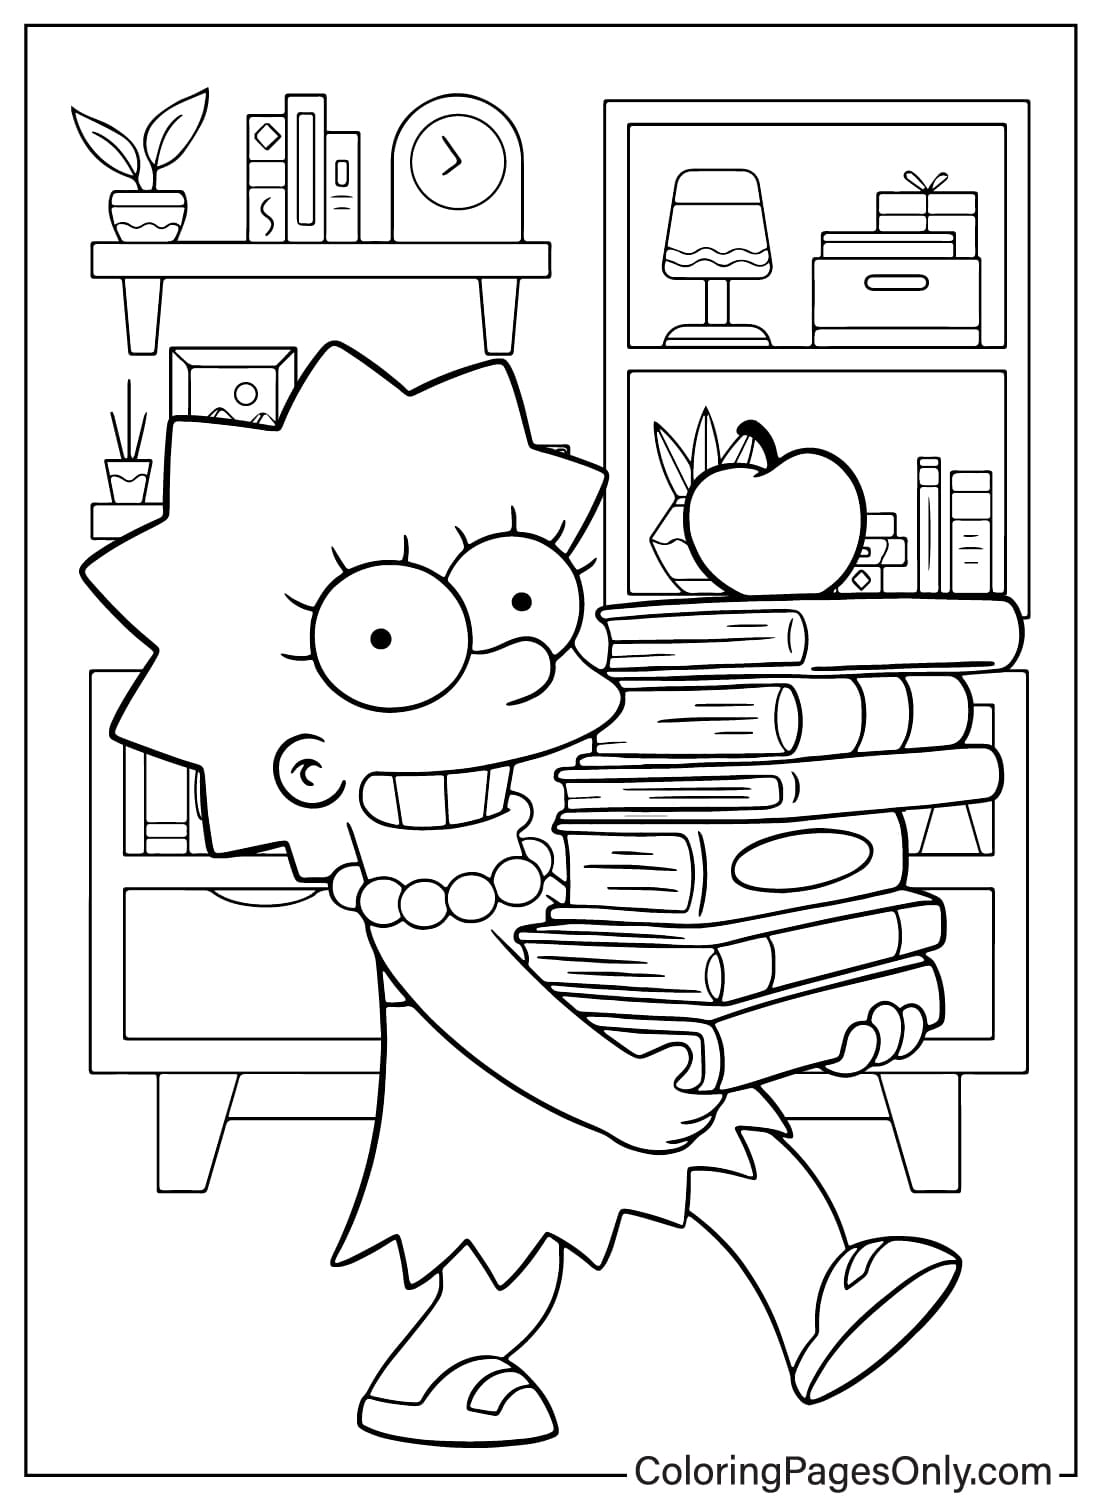 Dibujo para colorear de Lisa para imprimir de Los Simpson